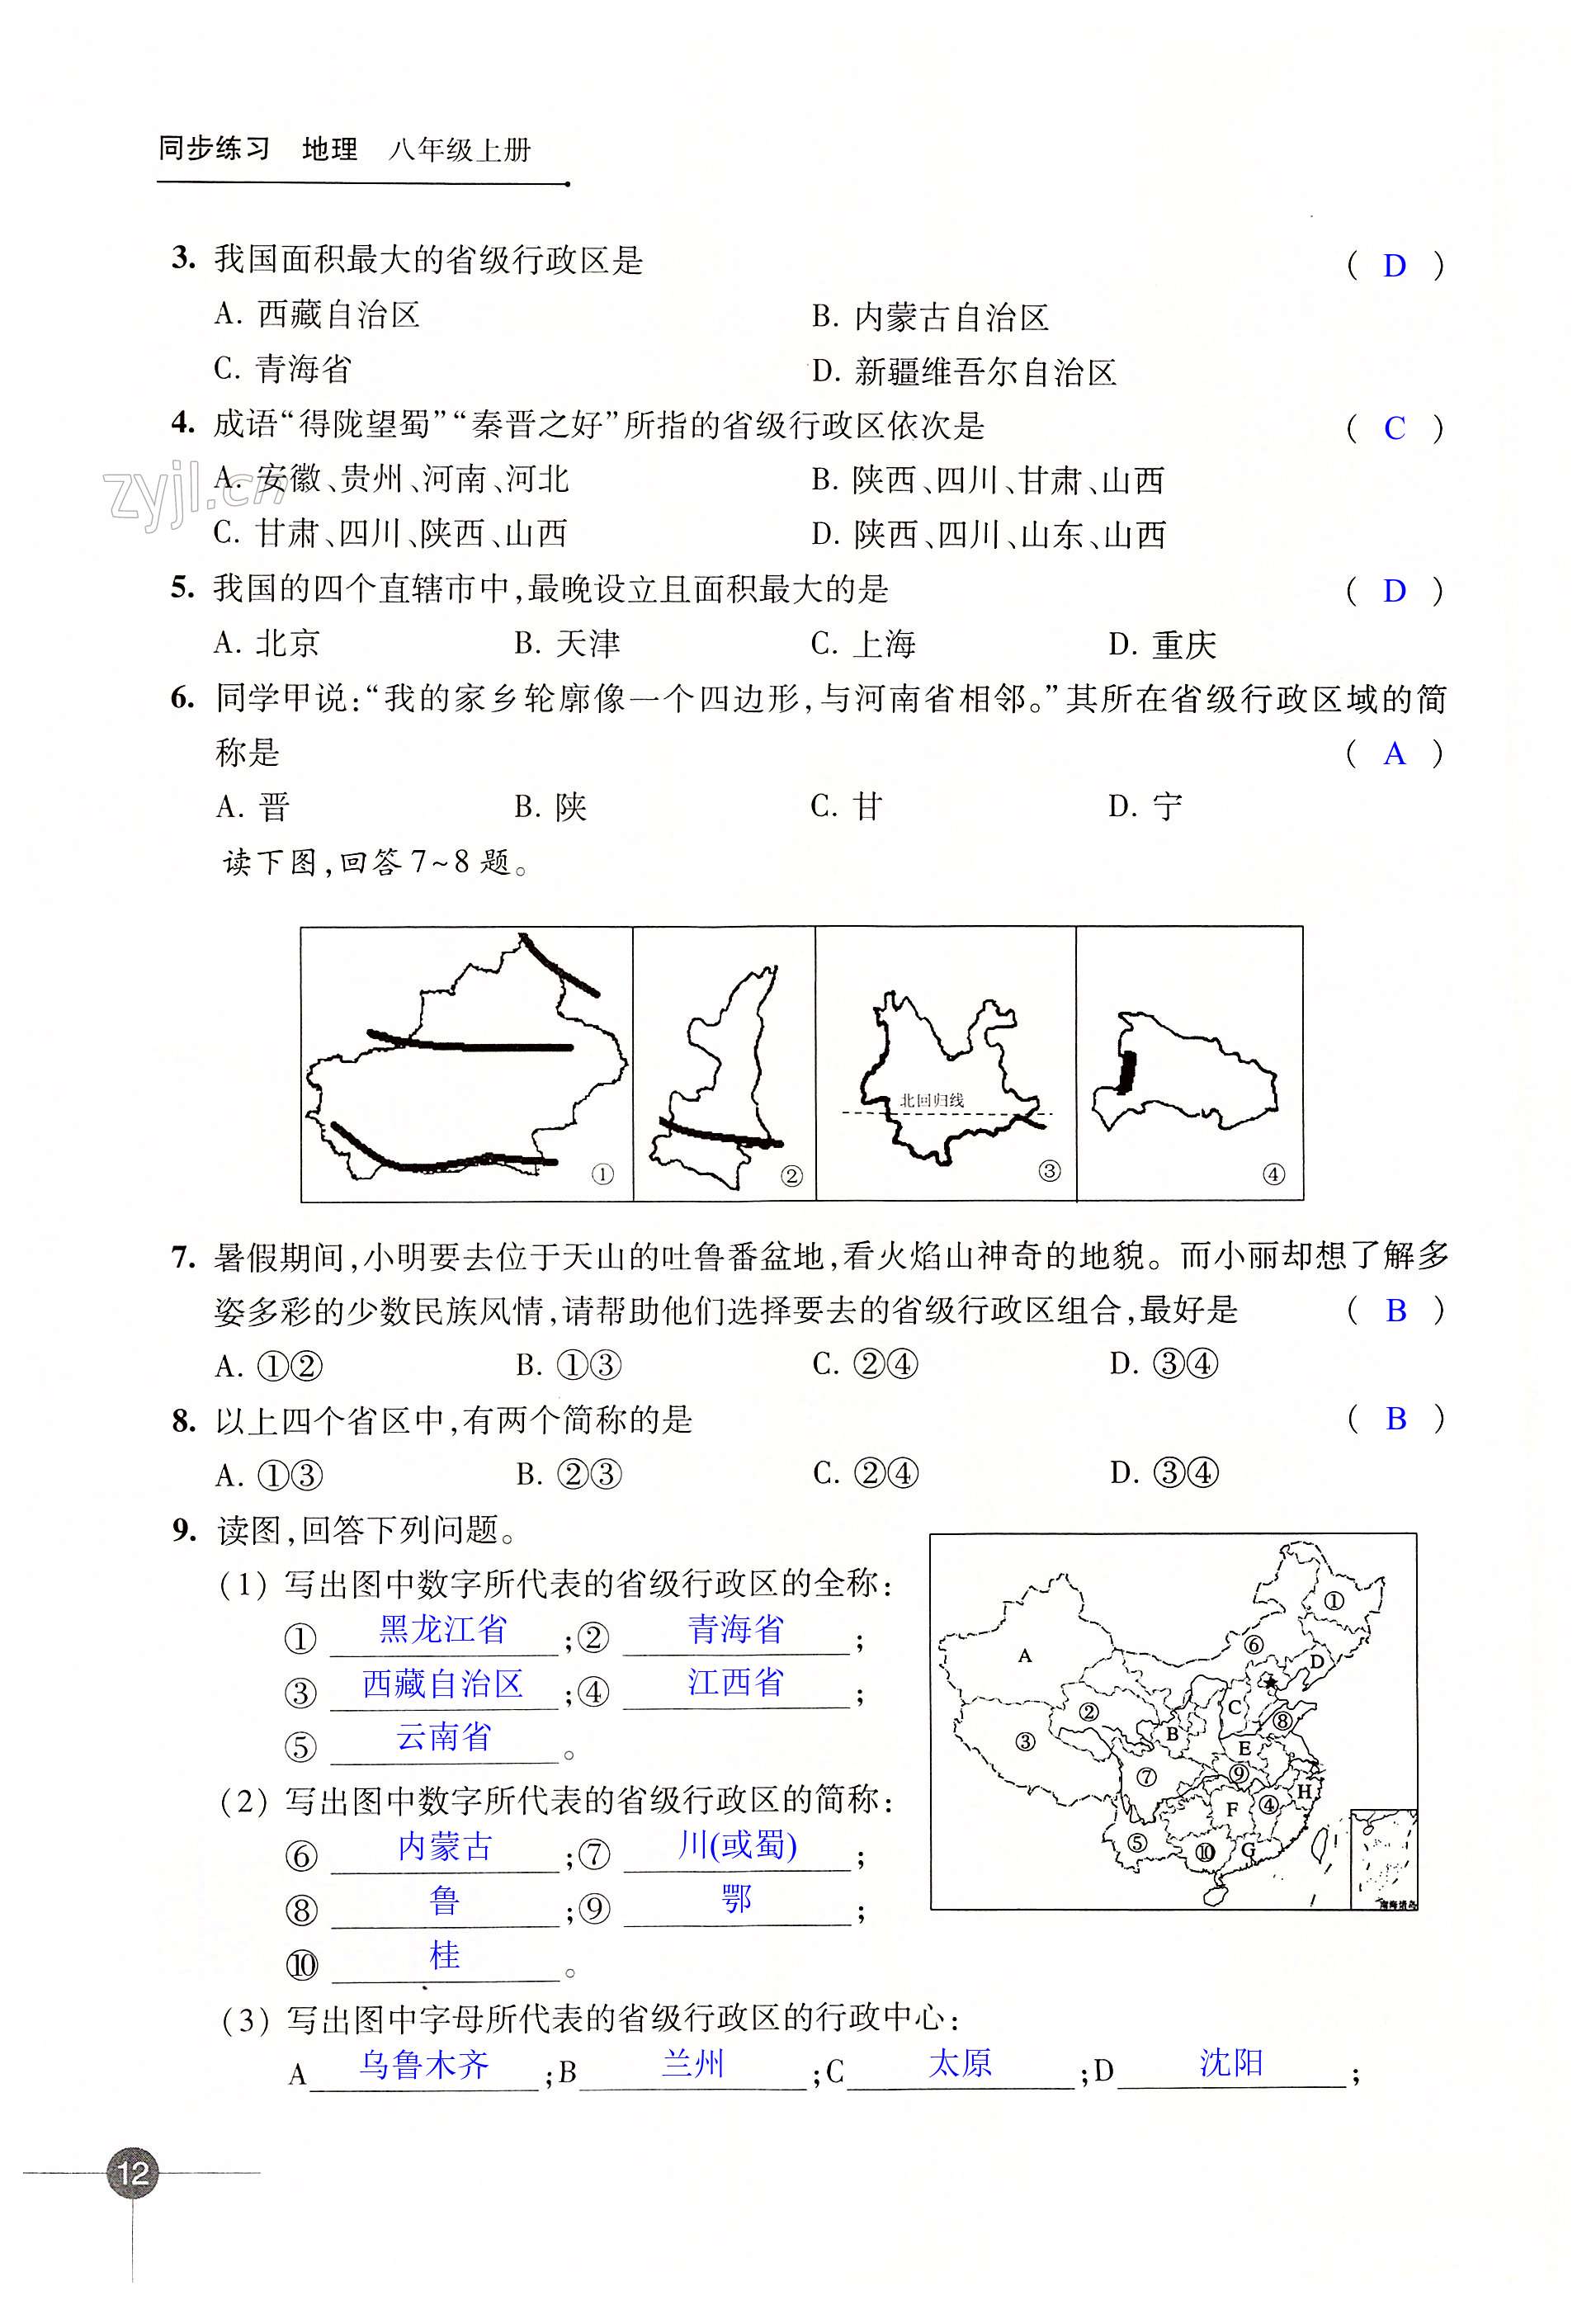 第一章 中国的疆域与人口 - 第12页